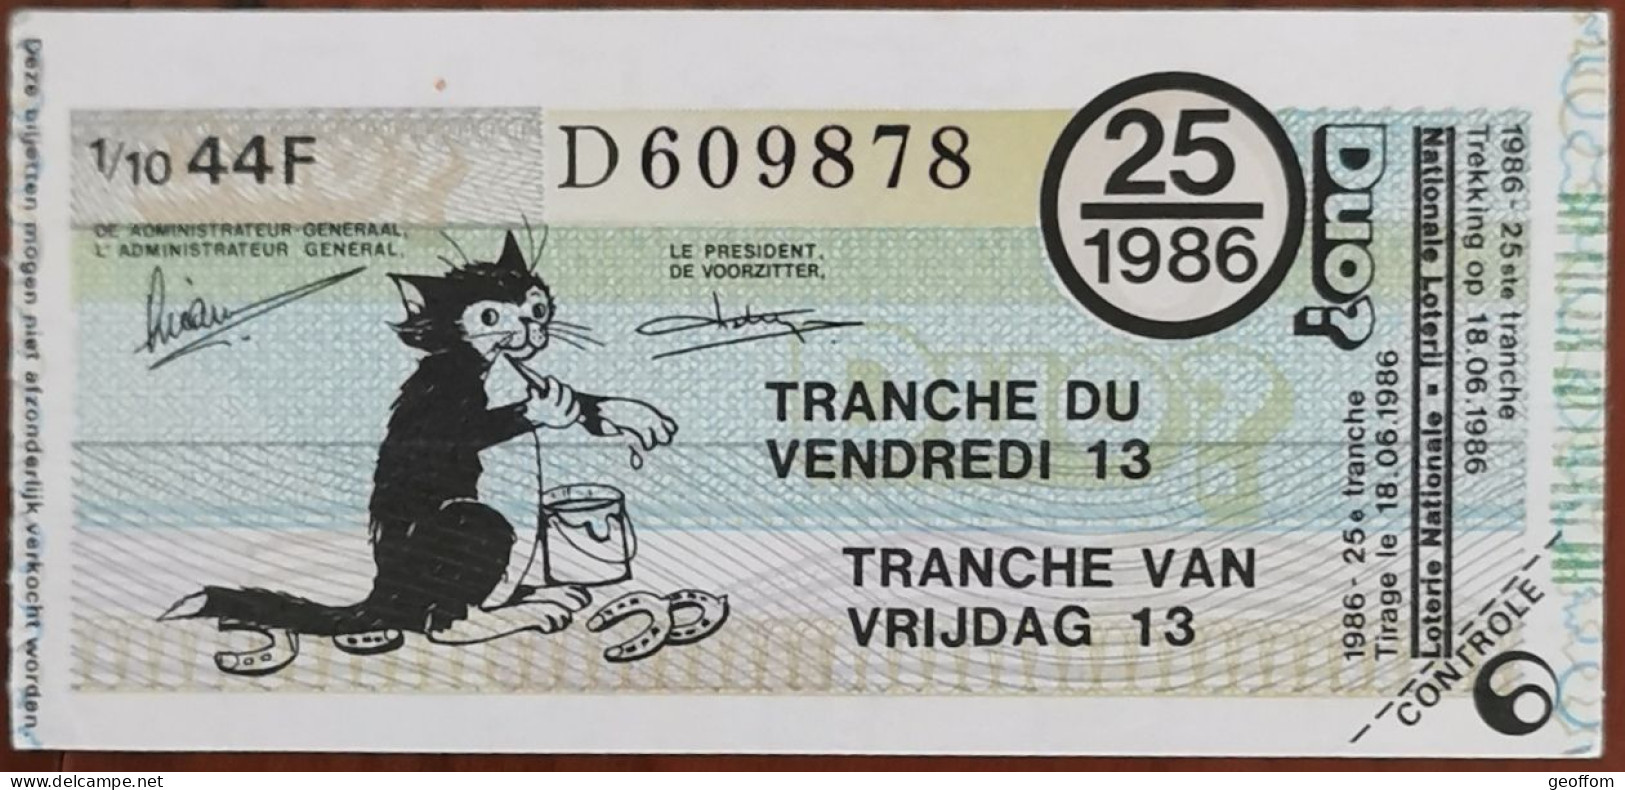 Billet De Loterie Nationale Belgique 1986 25e Tranche Du Vendredi 13 - 18-6-1986 - Billetes De Lotería